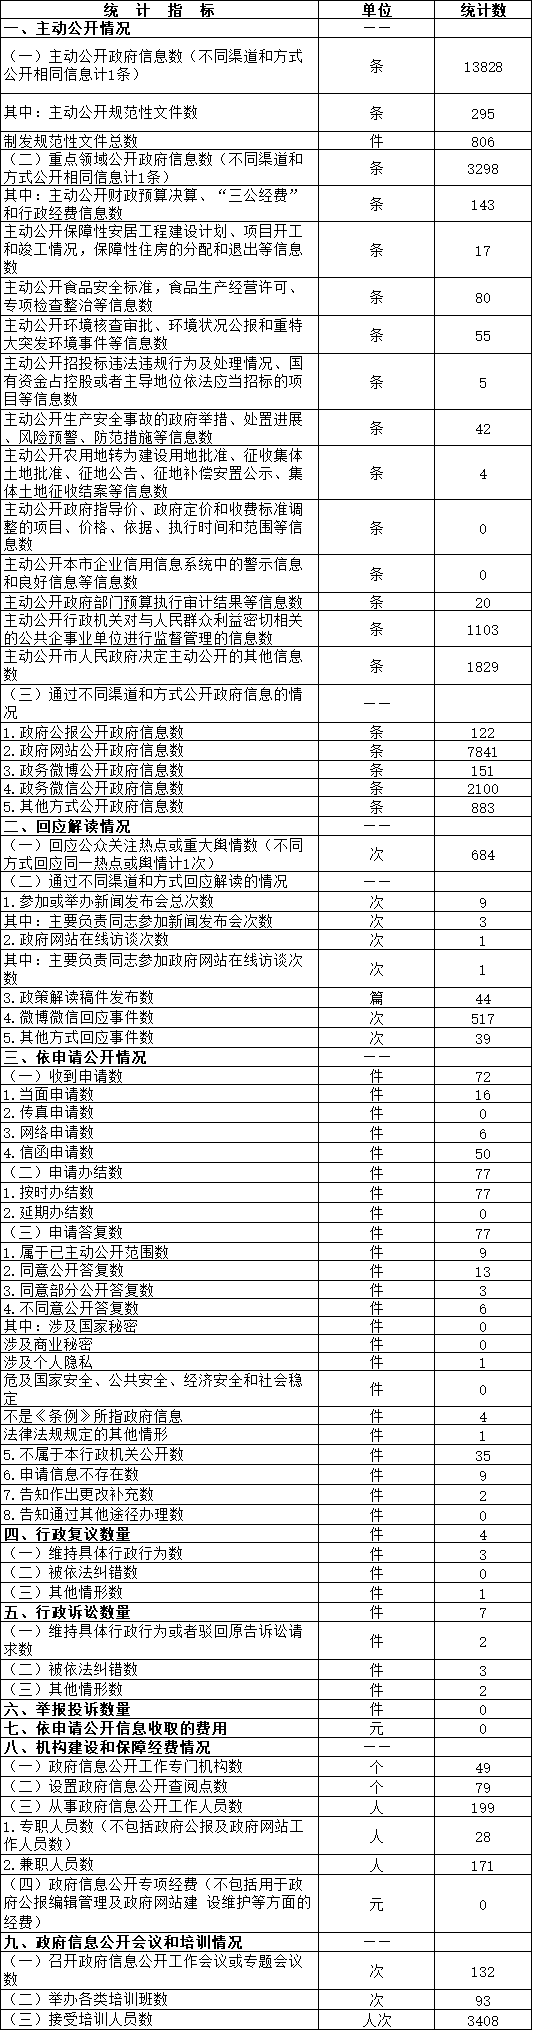 北京市延庆区政府信息公开情况统计表（2016年度）